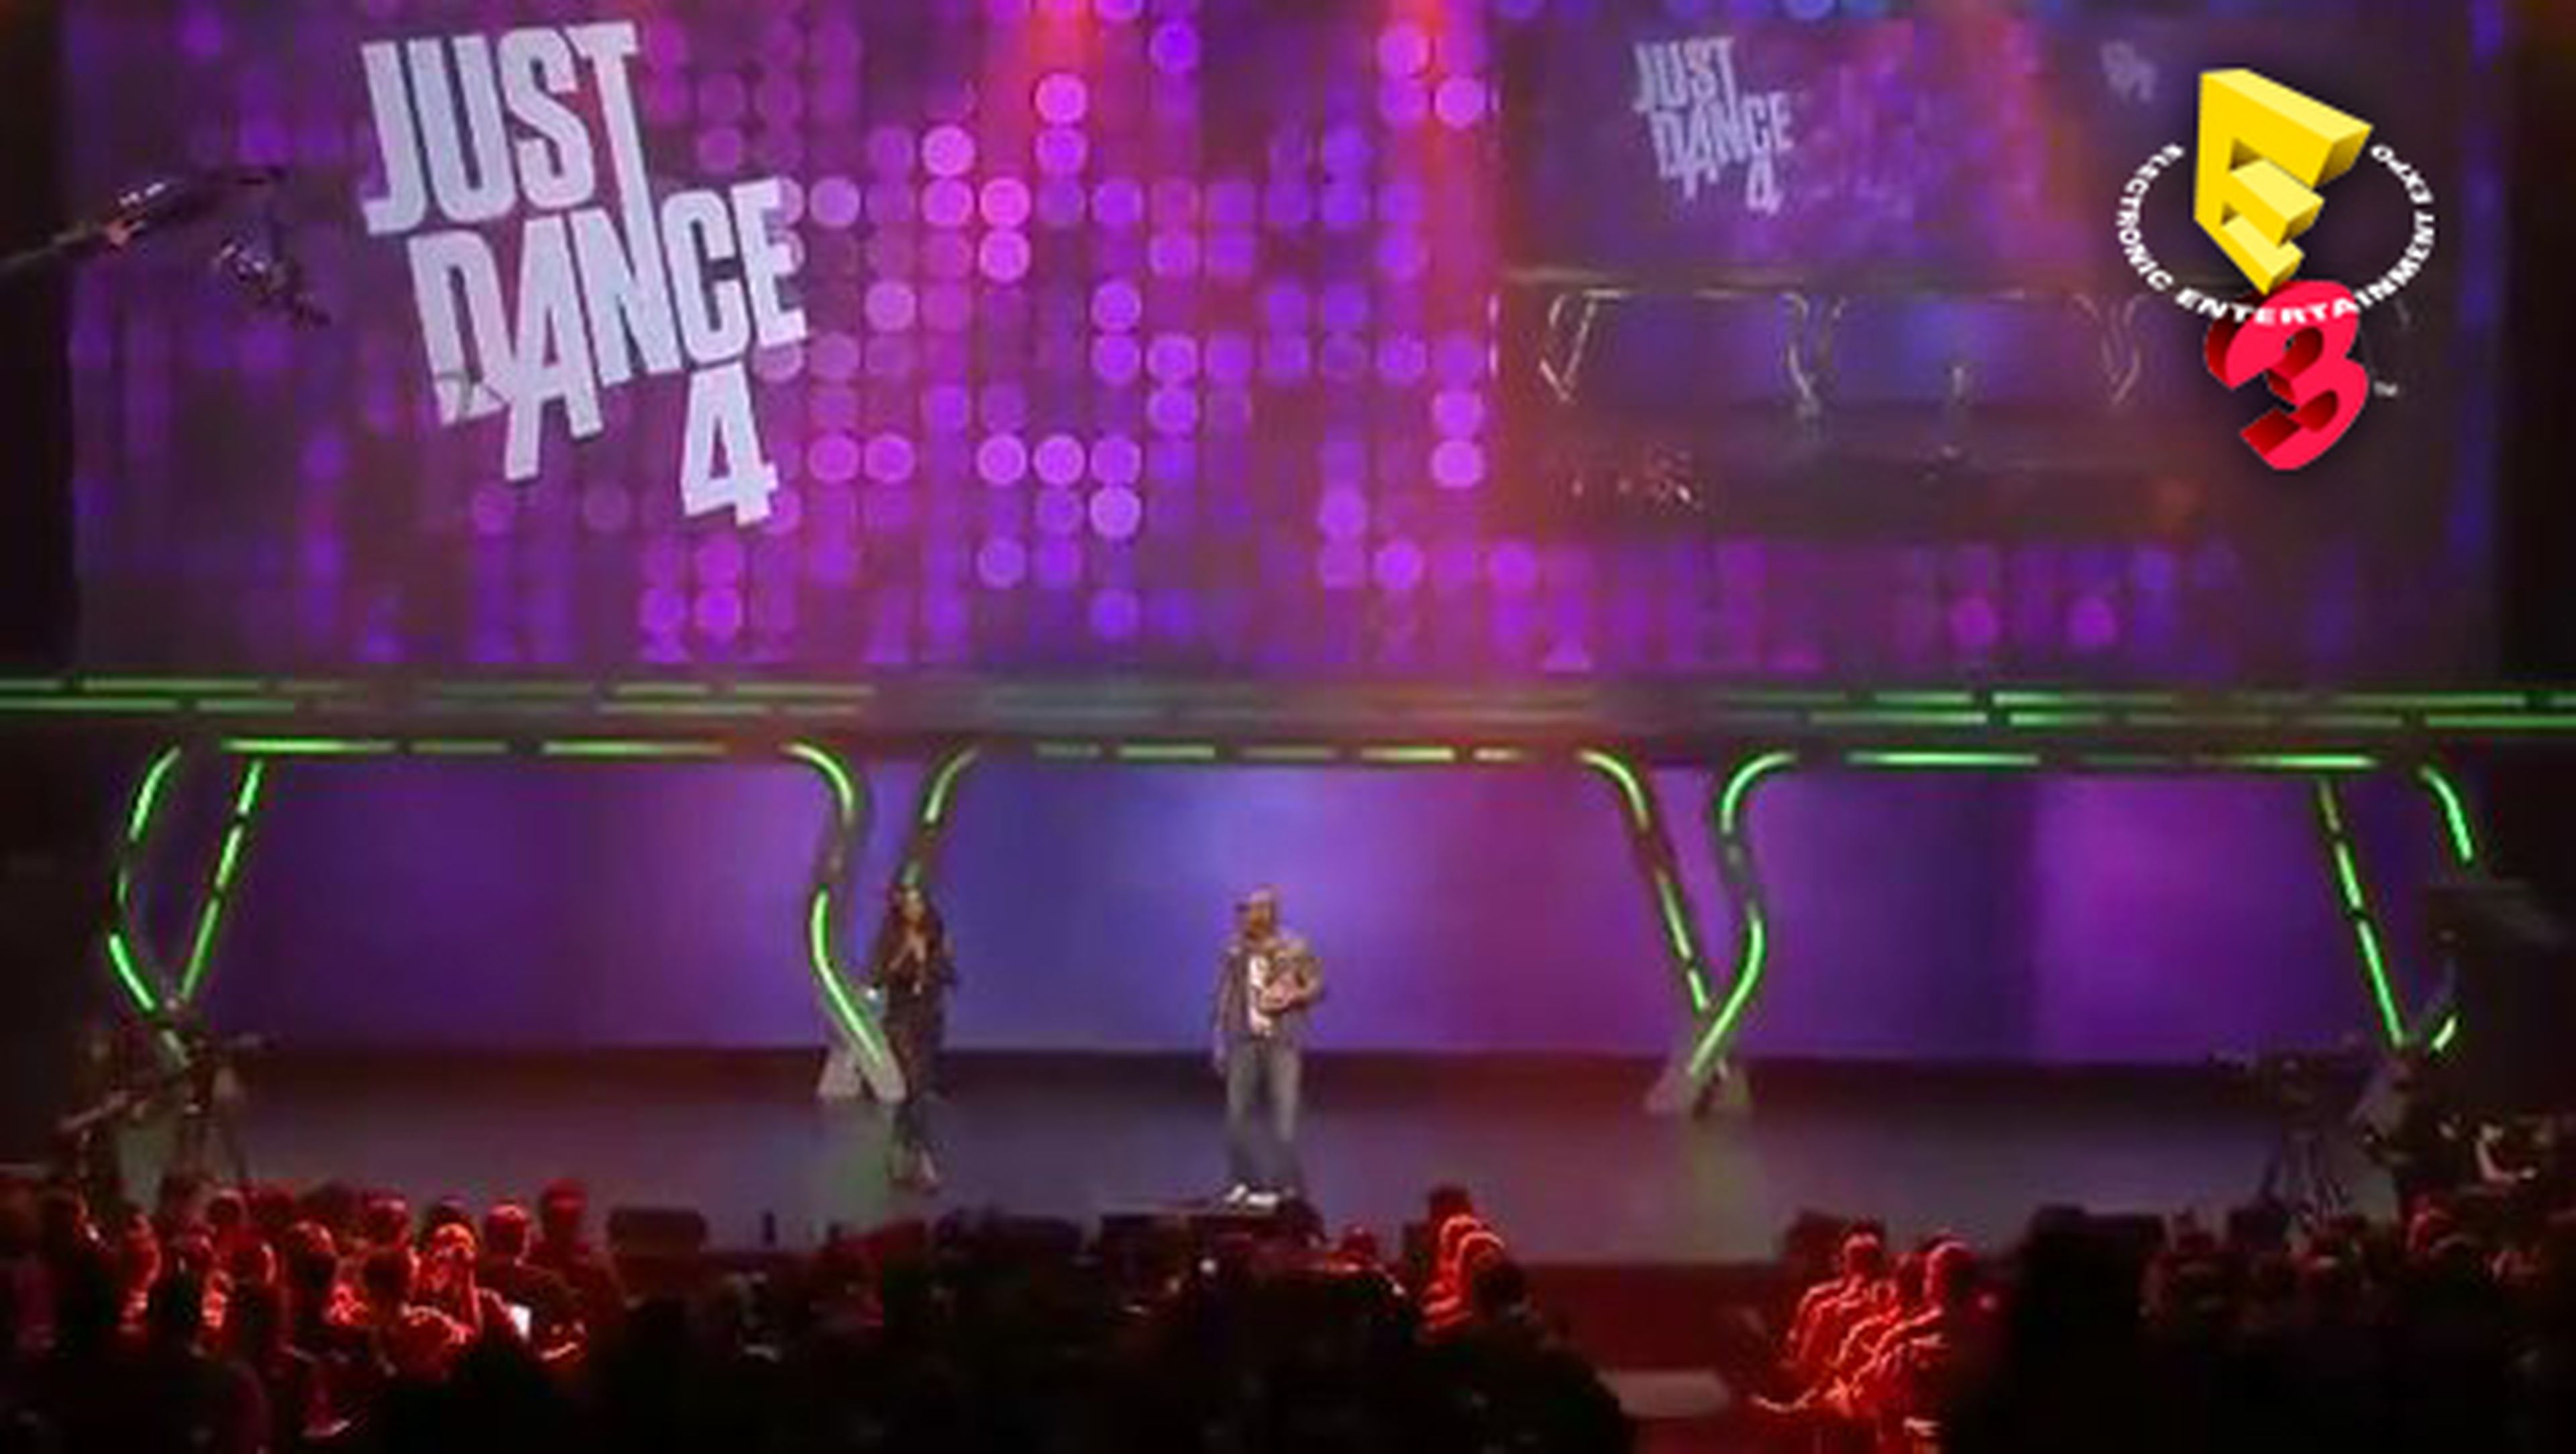 E3 2012: Just Dance 4, subidón, subidón...